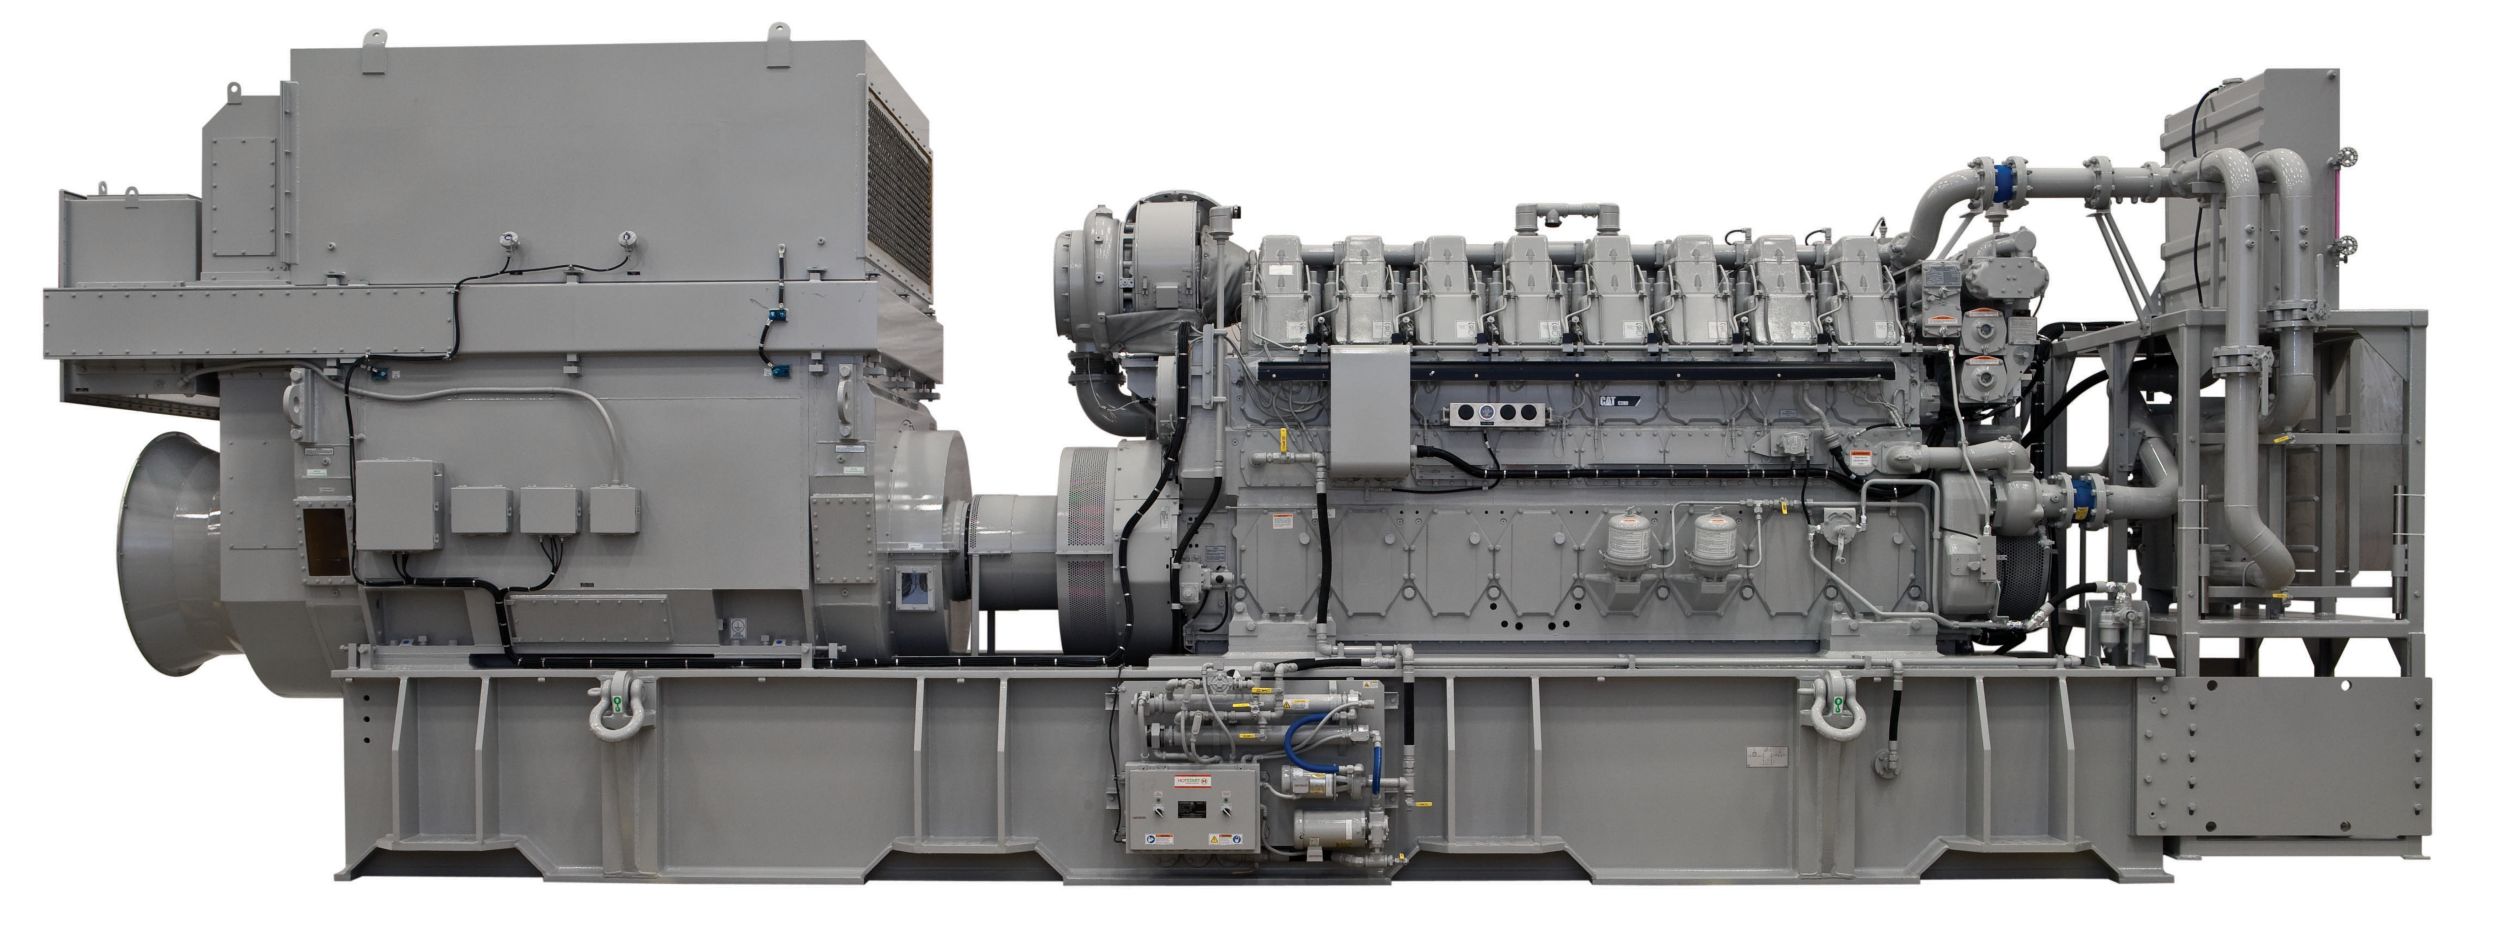 Морская генераторная установка C280-8